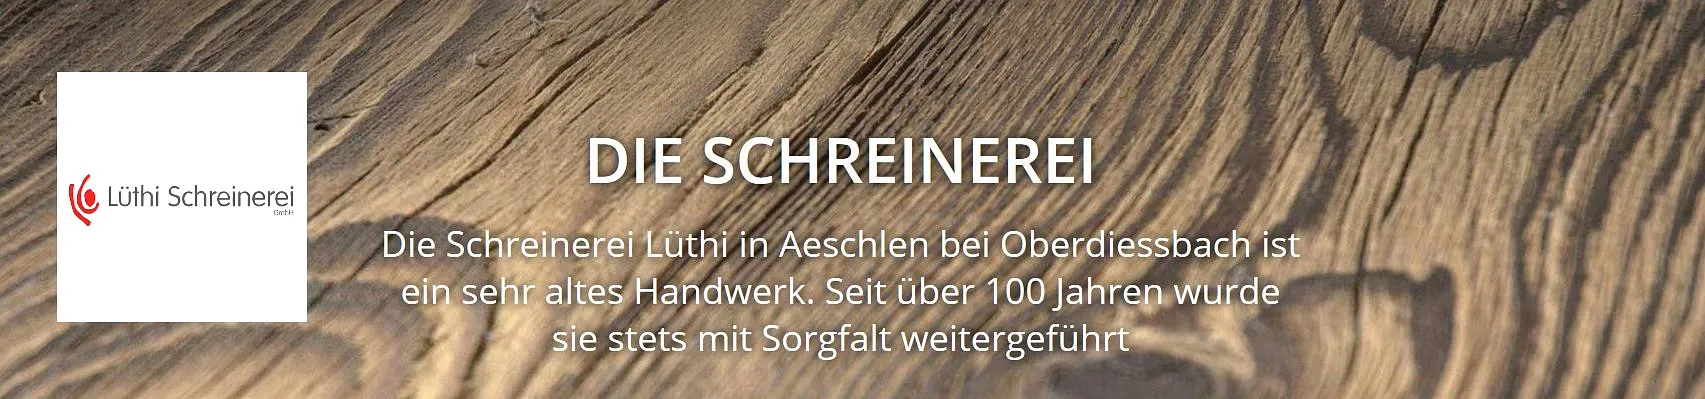 Lüthi Schreinerei GmbH